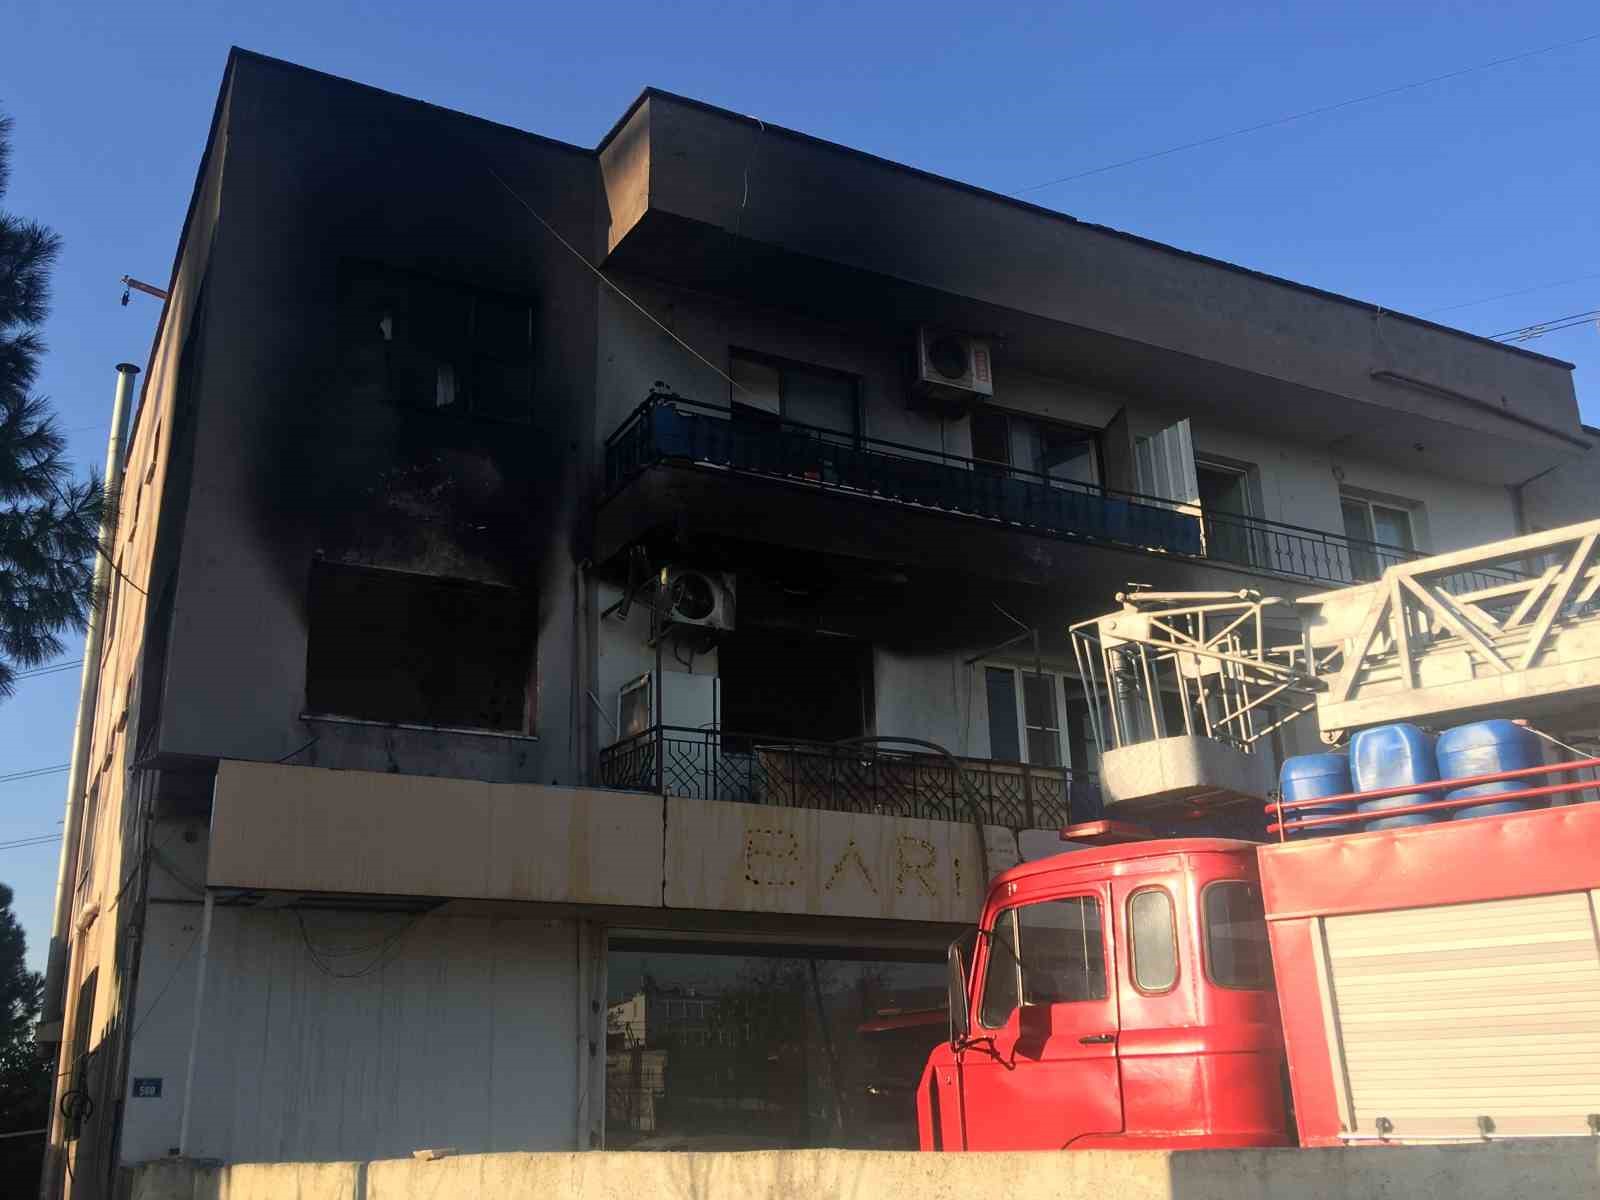 İncirliova’daki ev yangınında 2 kişi dumandan etkilendi
